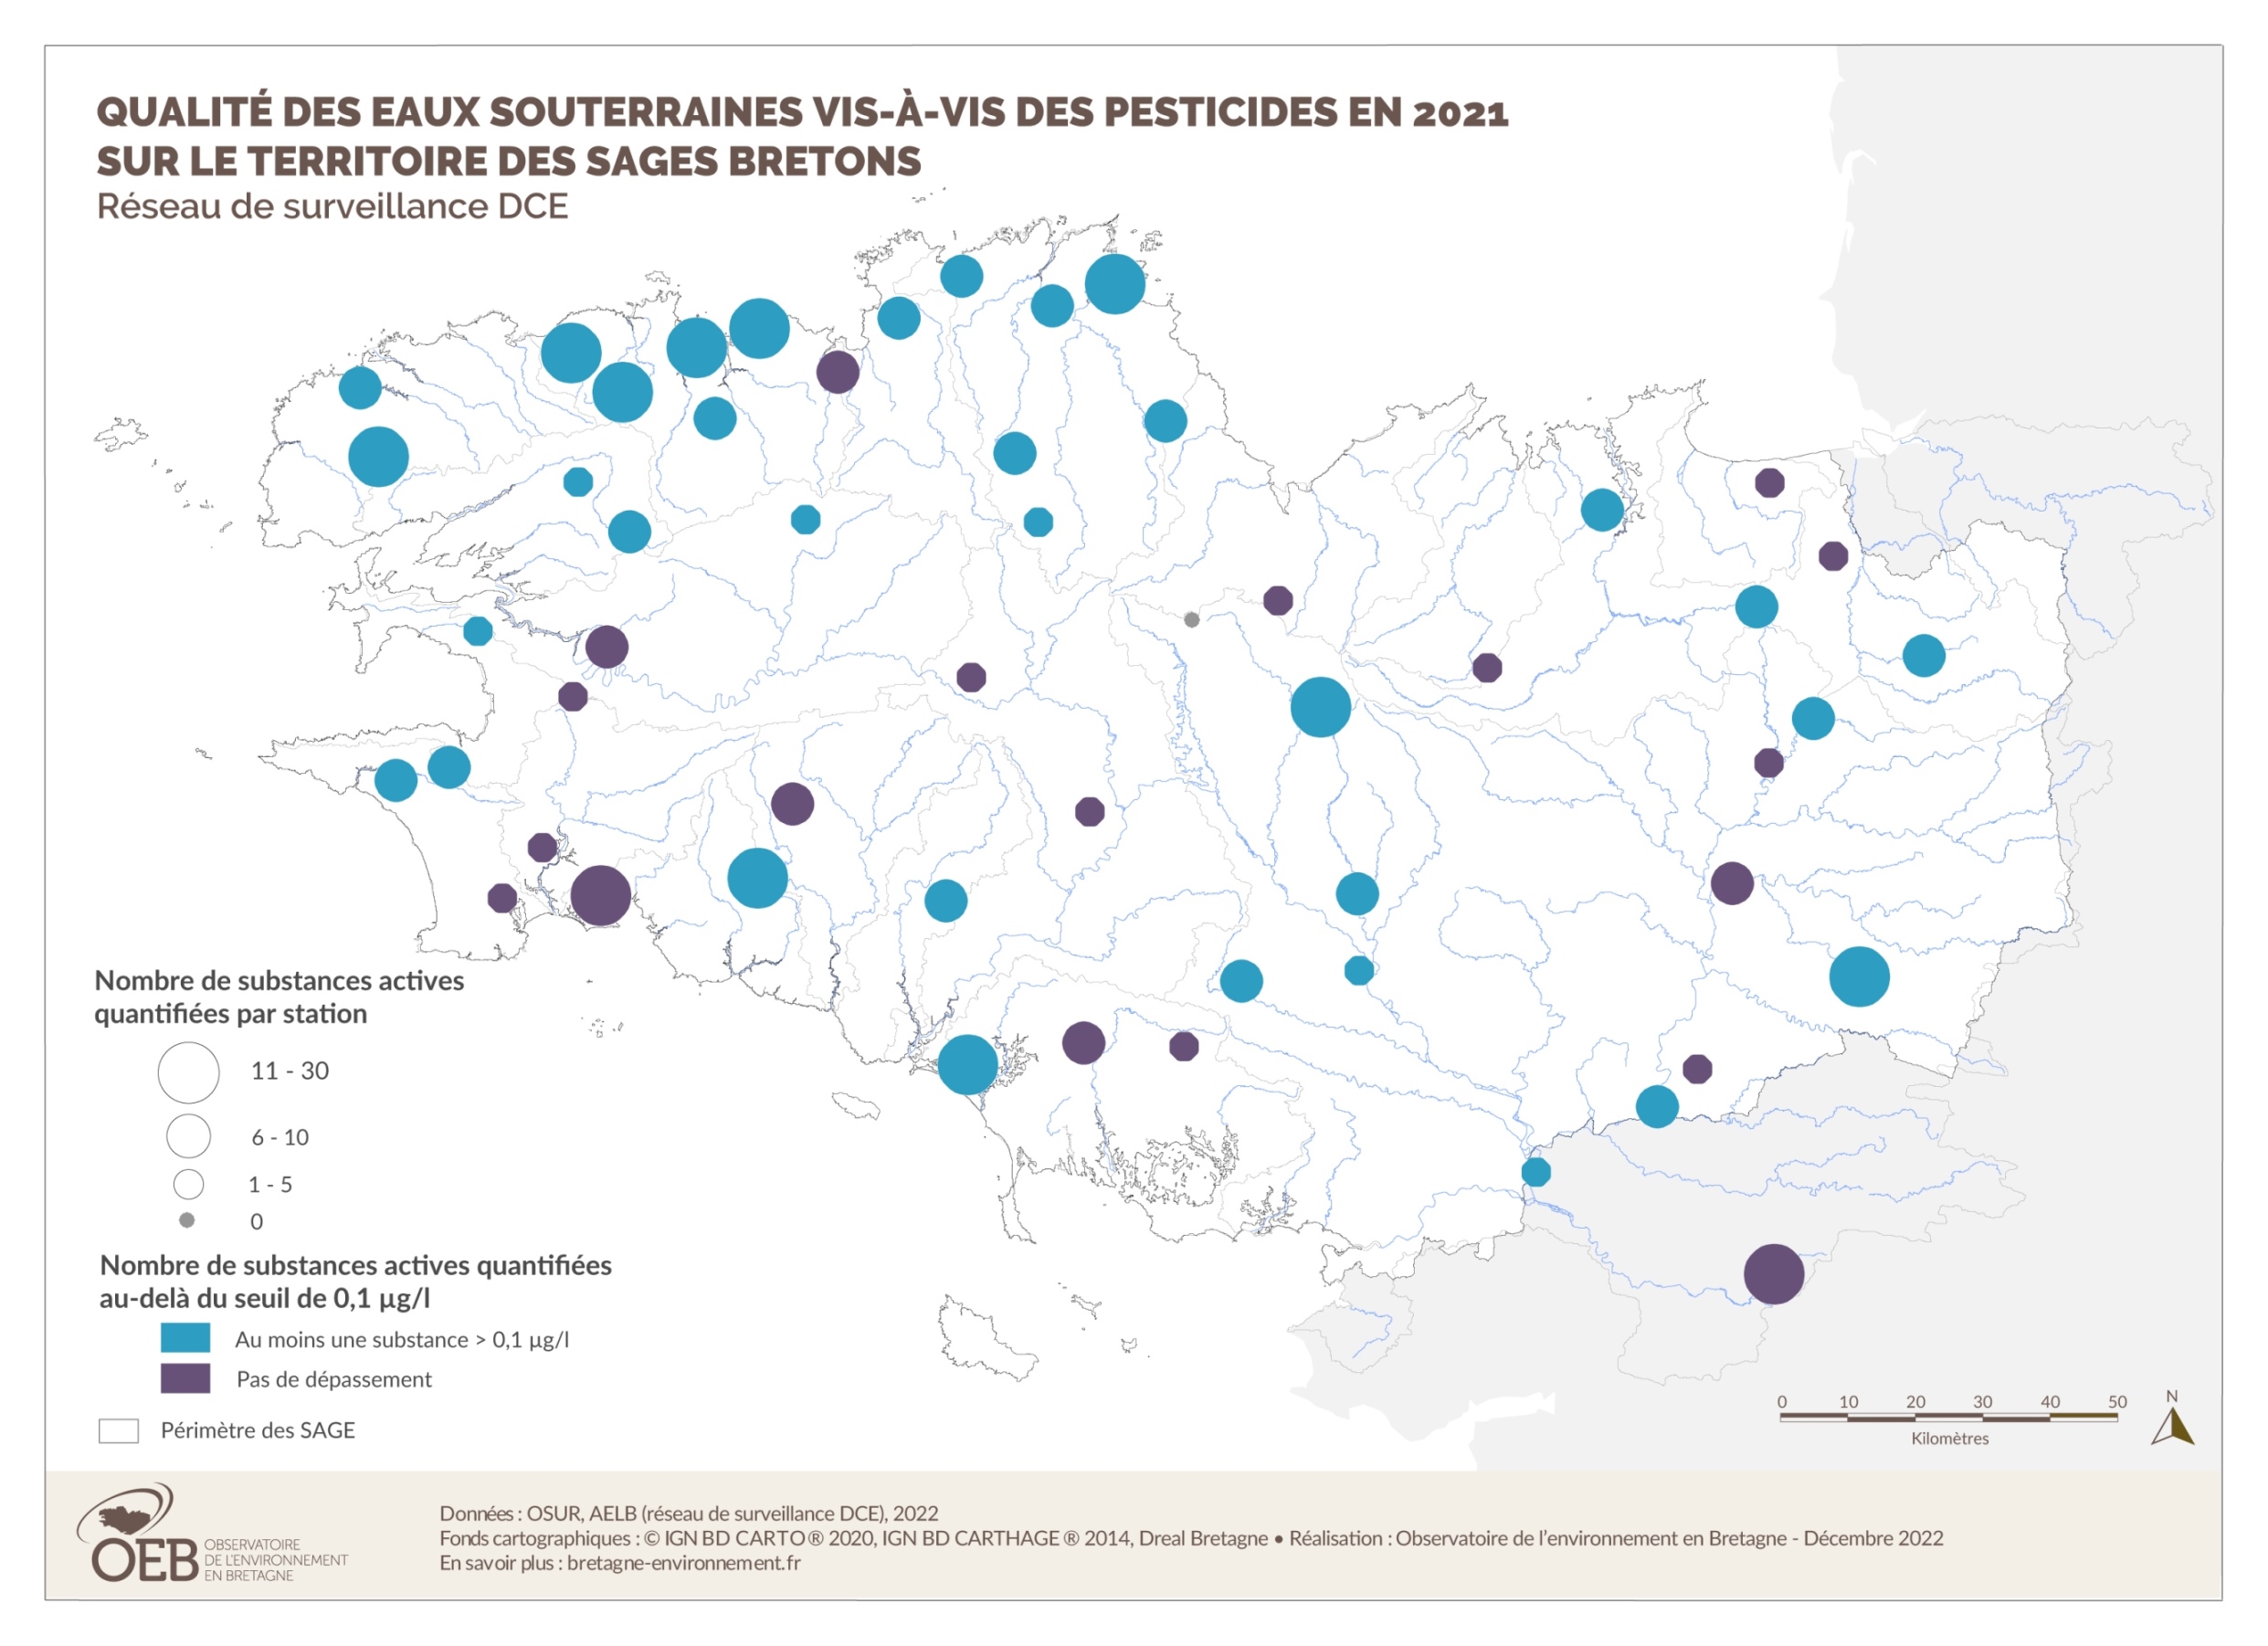 Qualité des eaux souterraines vis-à-vis des pesticides en 2015